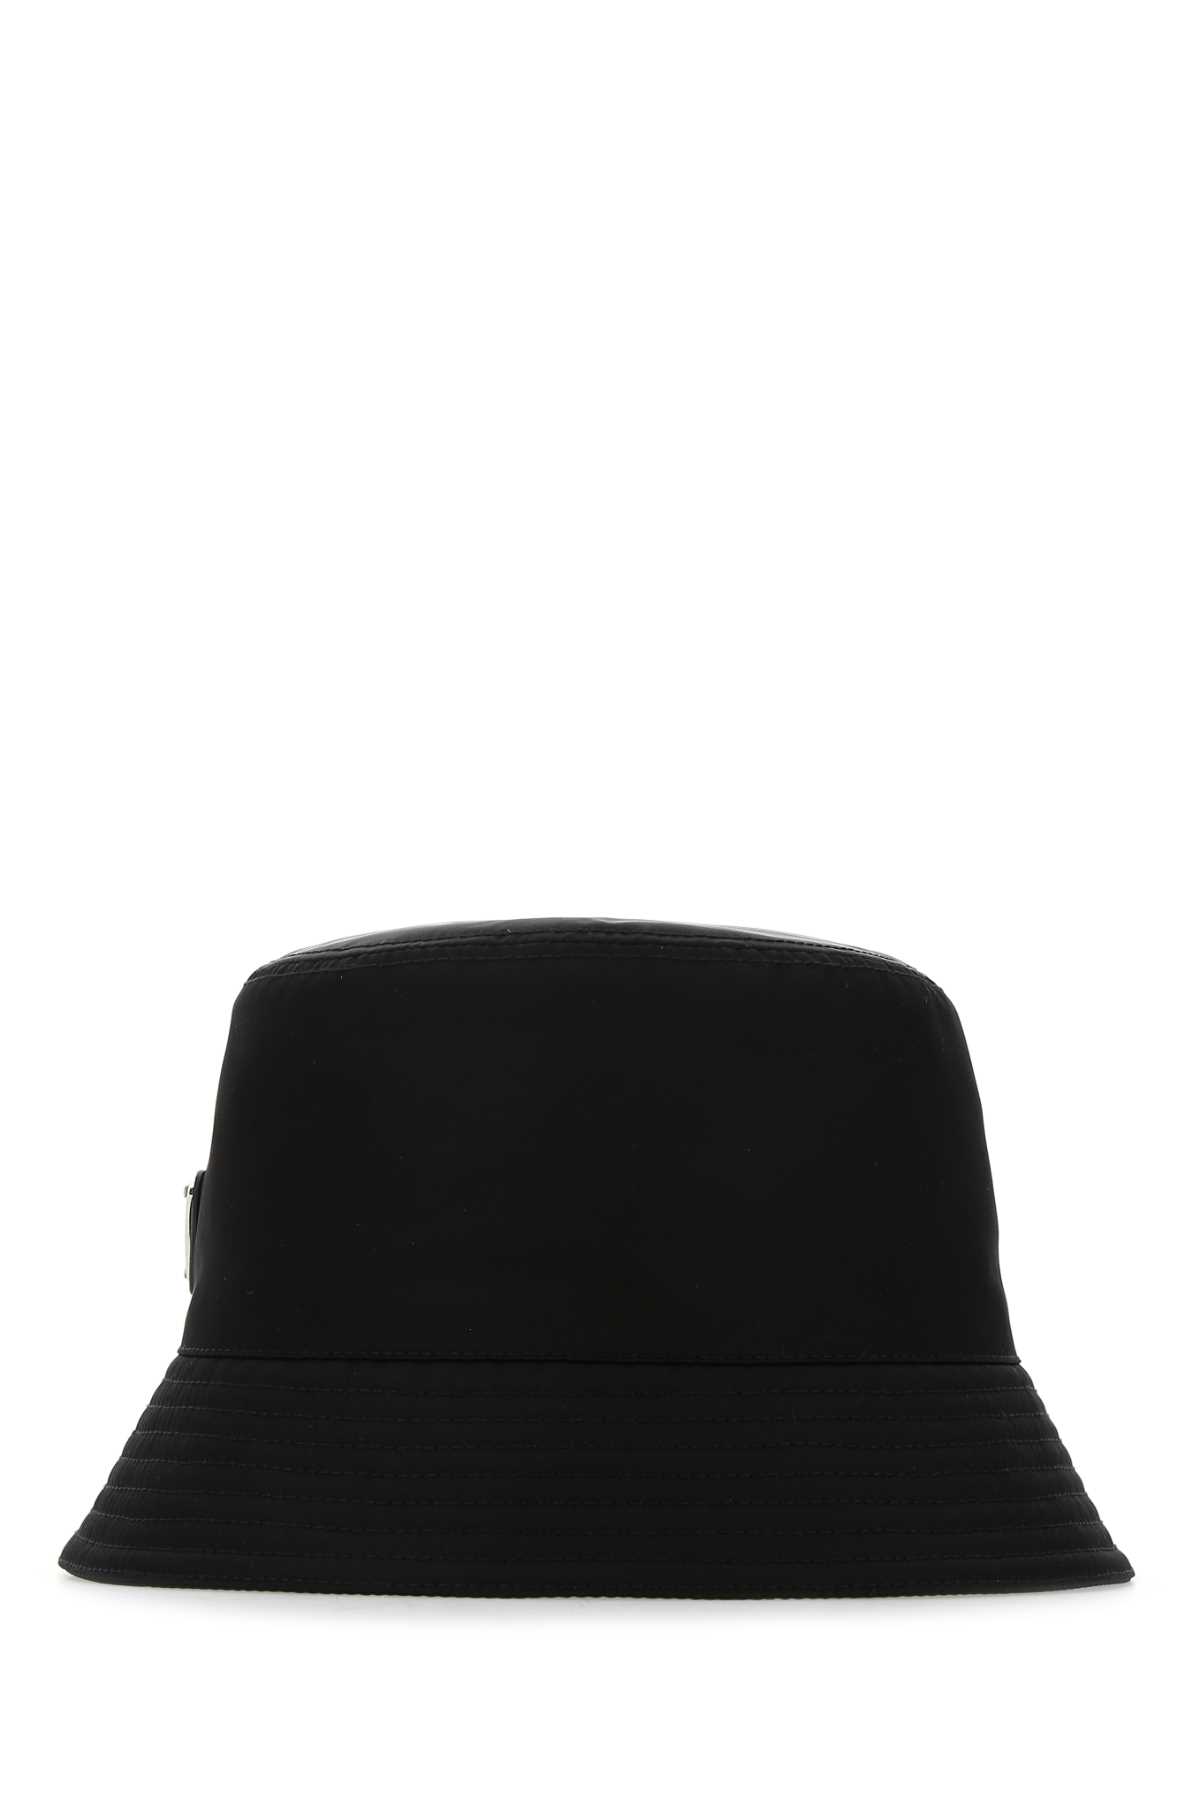 Prada Black Re-nylon Hat In Nero